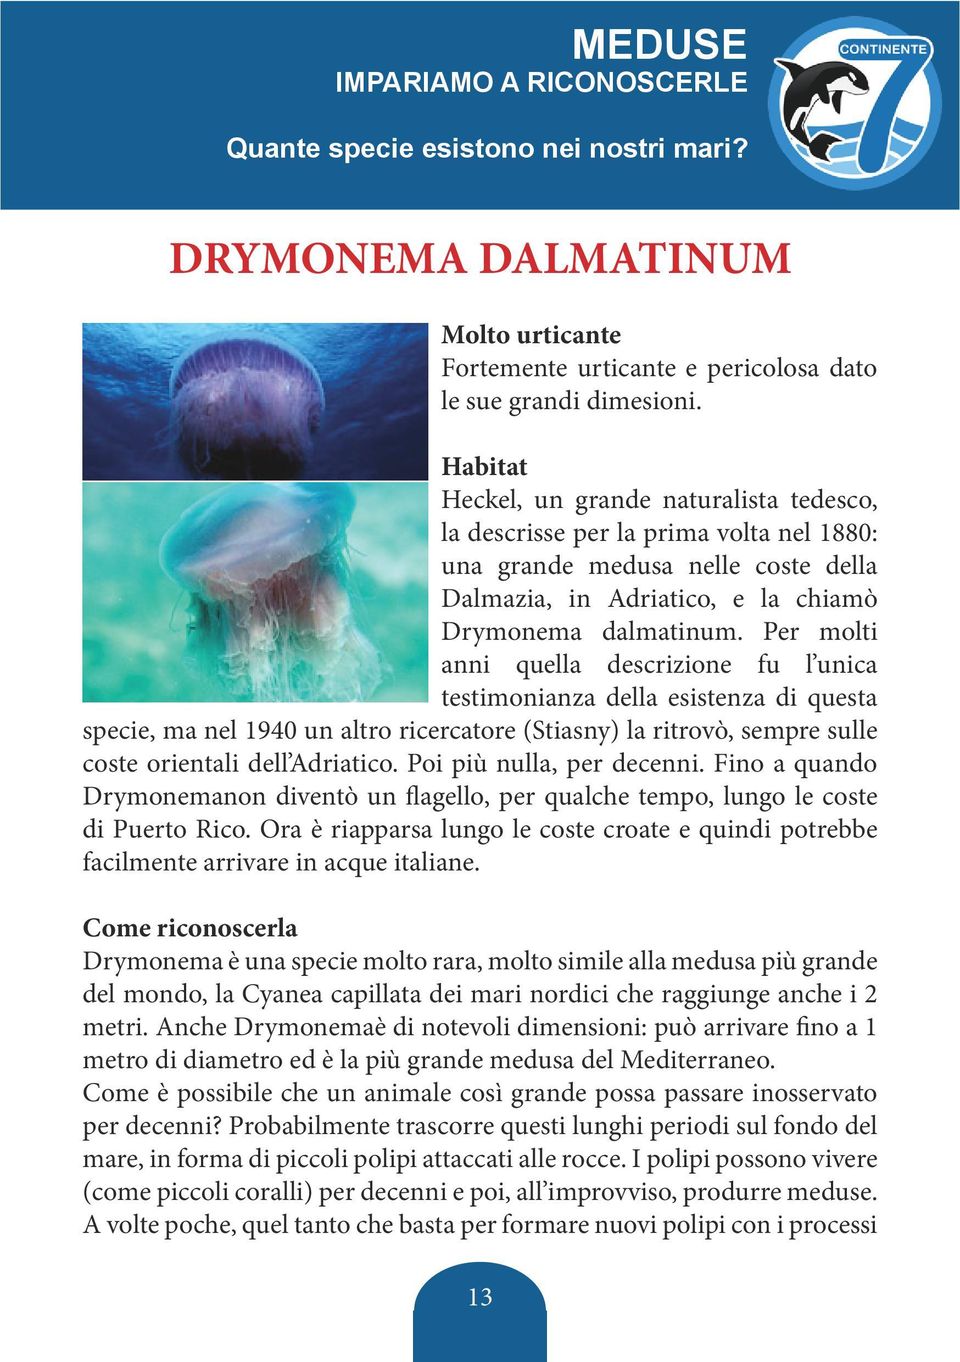 Per molti anni quella descrizione fu l unica testimonianza della esistenza di questa specie, ma nel 1940 un altro ricercatore (Stiasny) la ritrovò, sempre sulle coste orientali dell Adriatico.